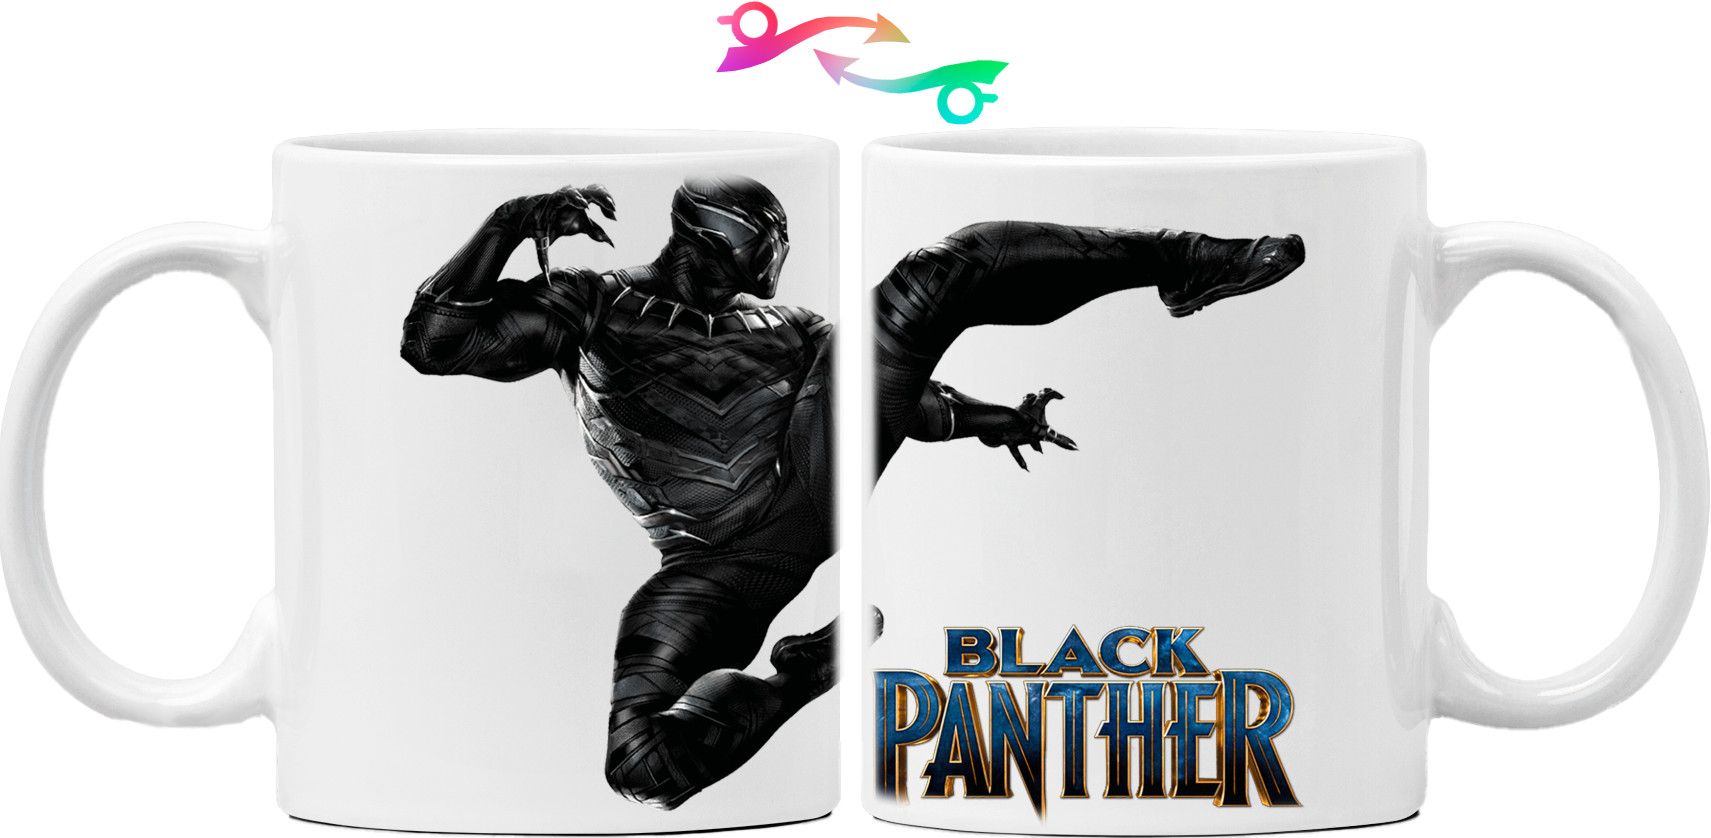 Black panther 12